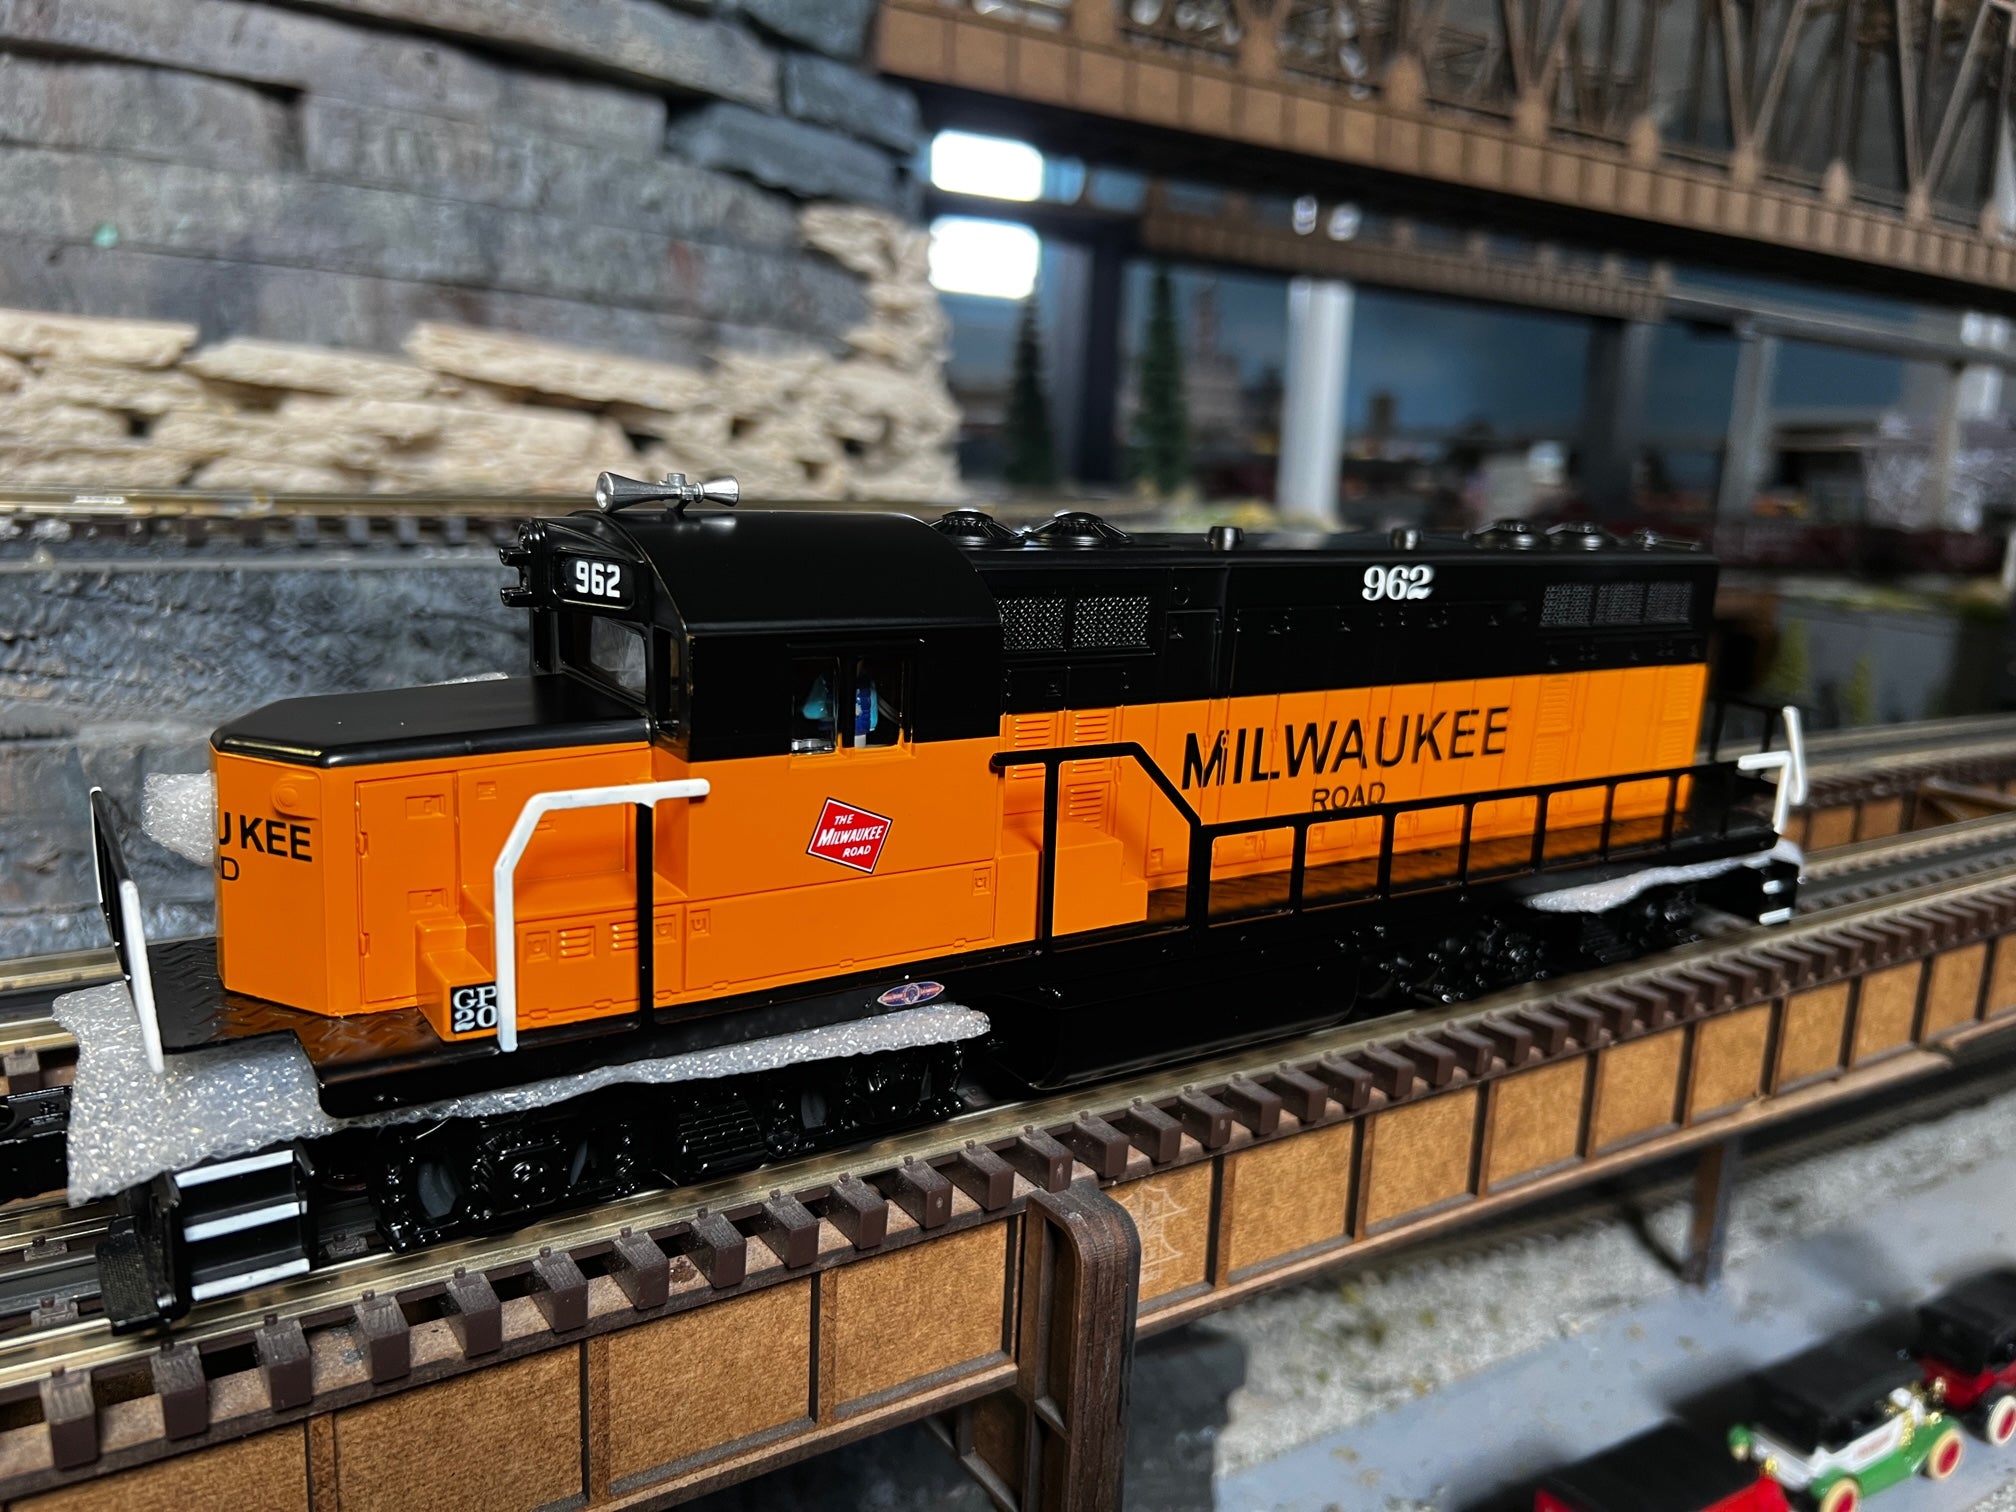 Lionel 2234150 - LionChief+ 2.0 GP20 Diesel Locomotive "Milwaukee Road" #962